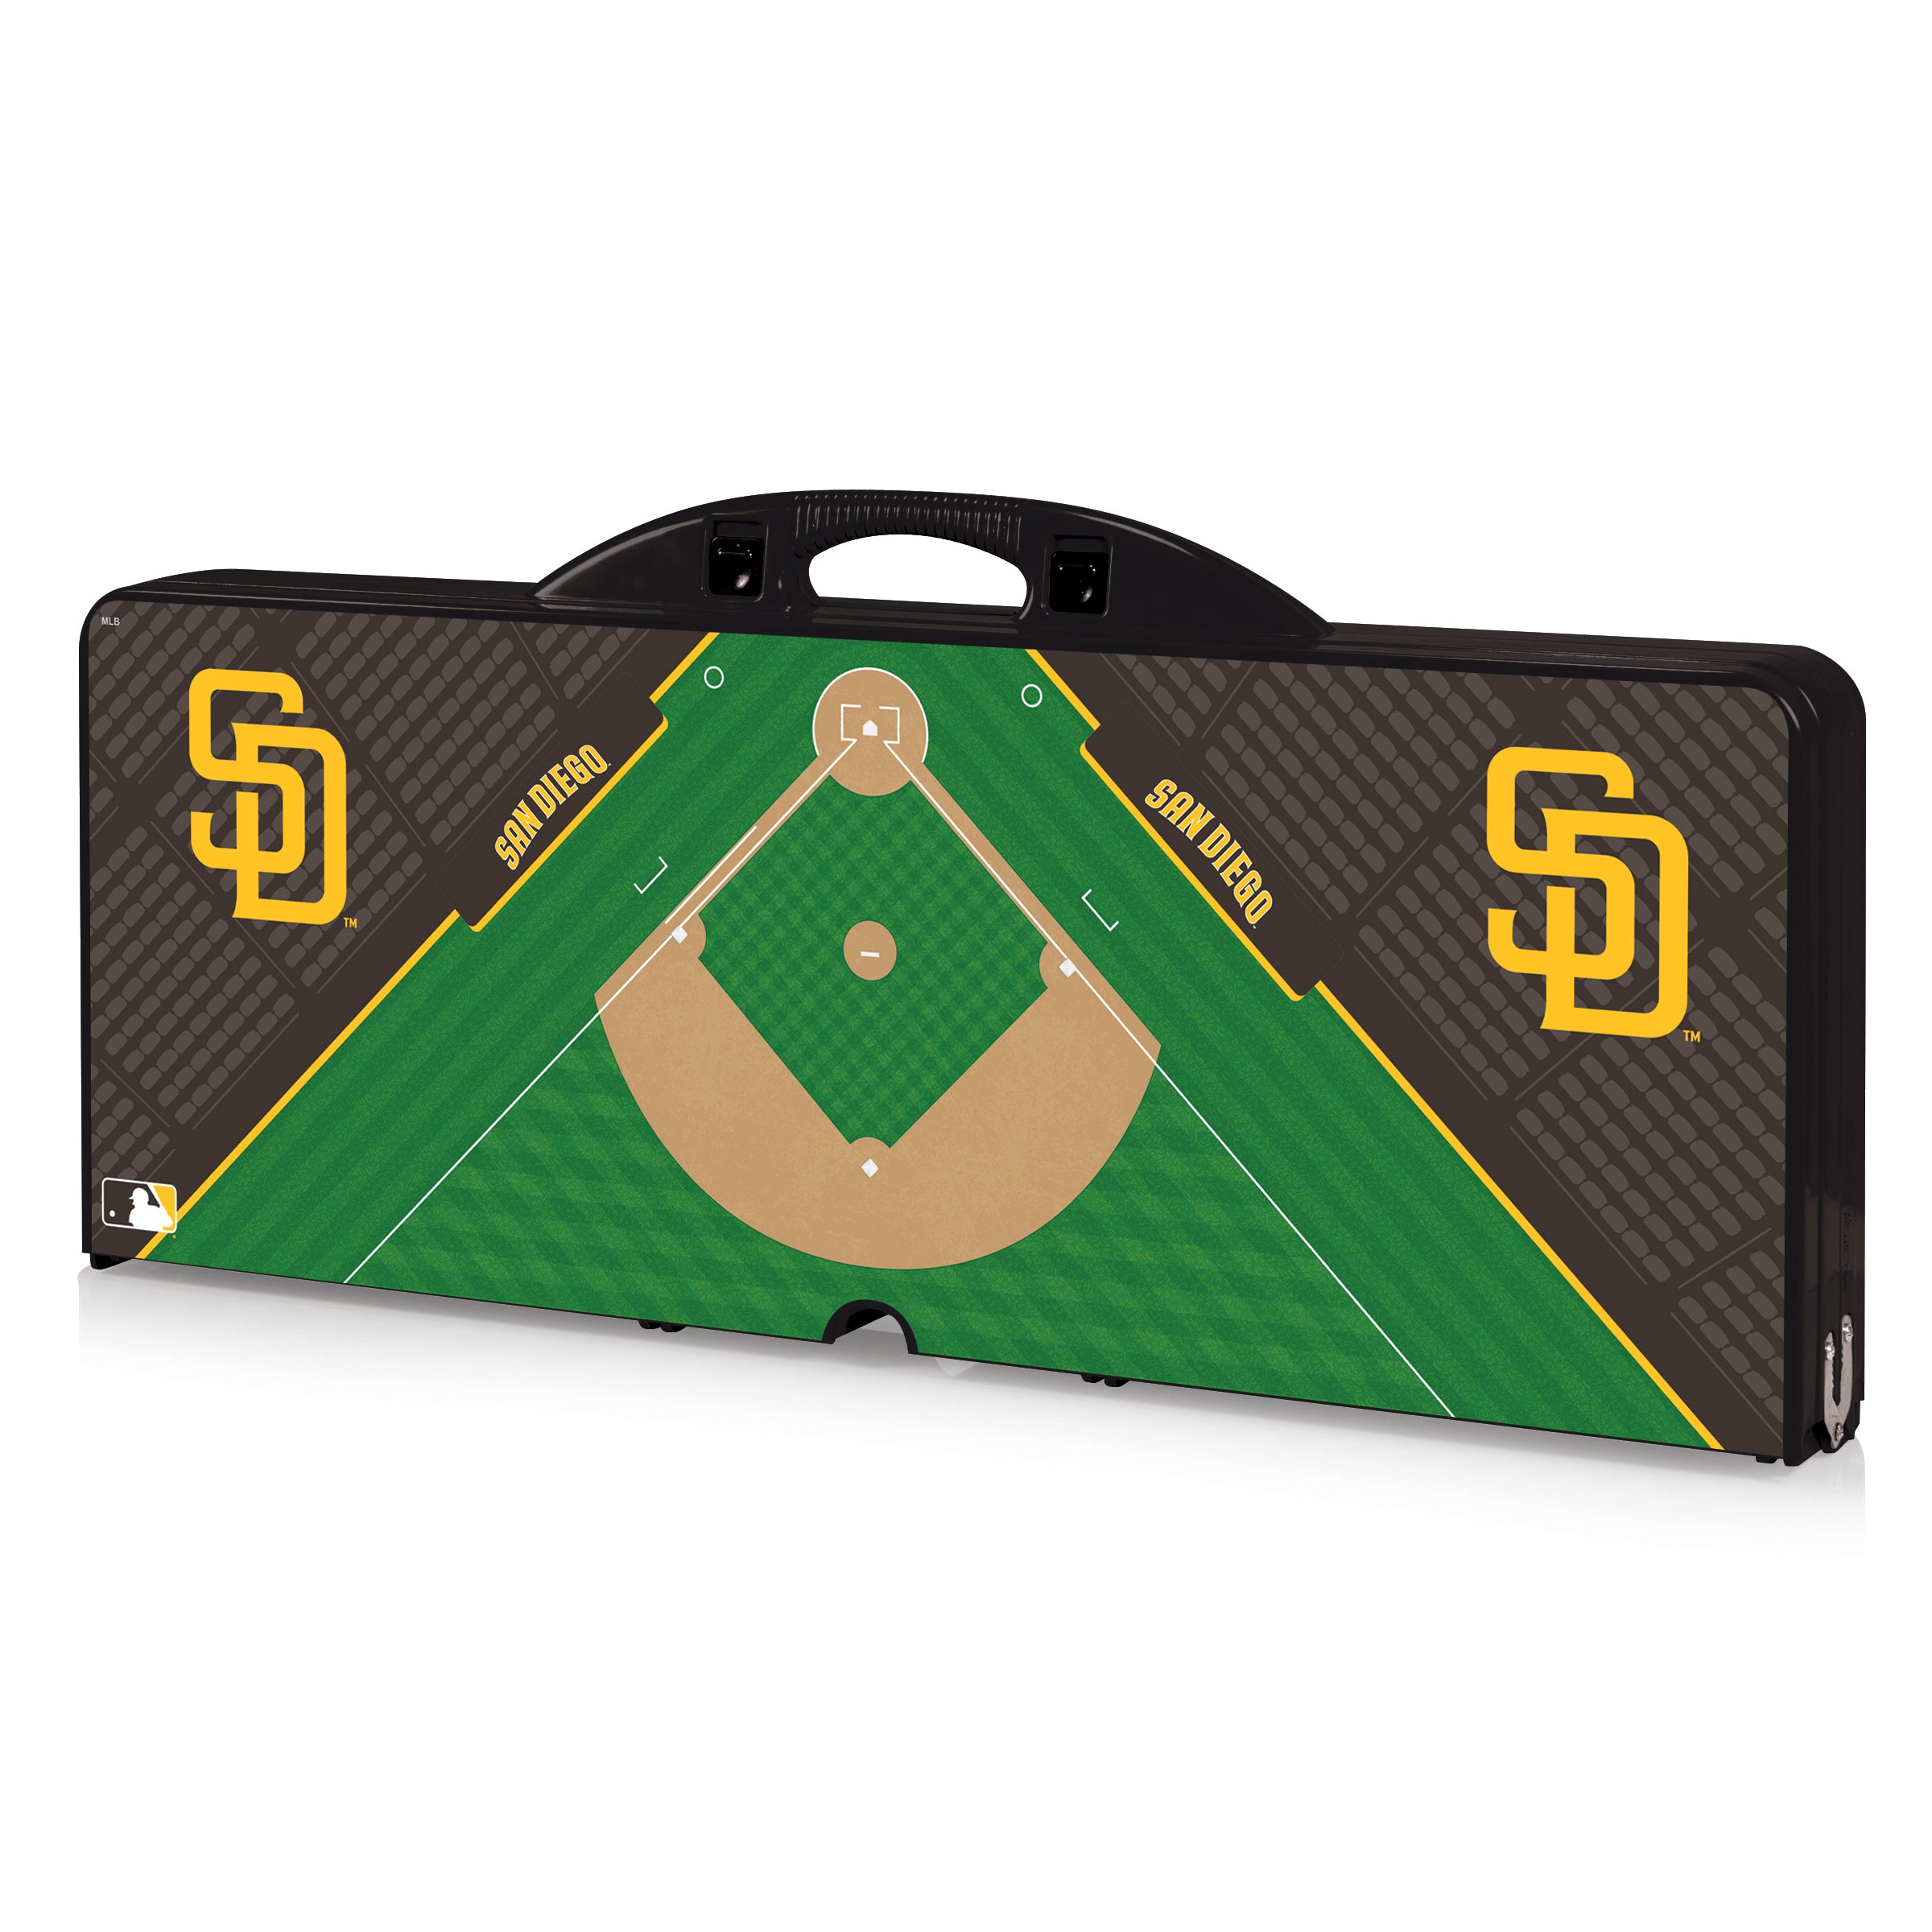 San Diego Padres Baseball Diamond - Picnic Table Portable Folding Table with Seats